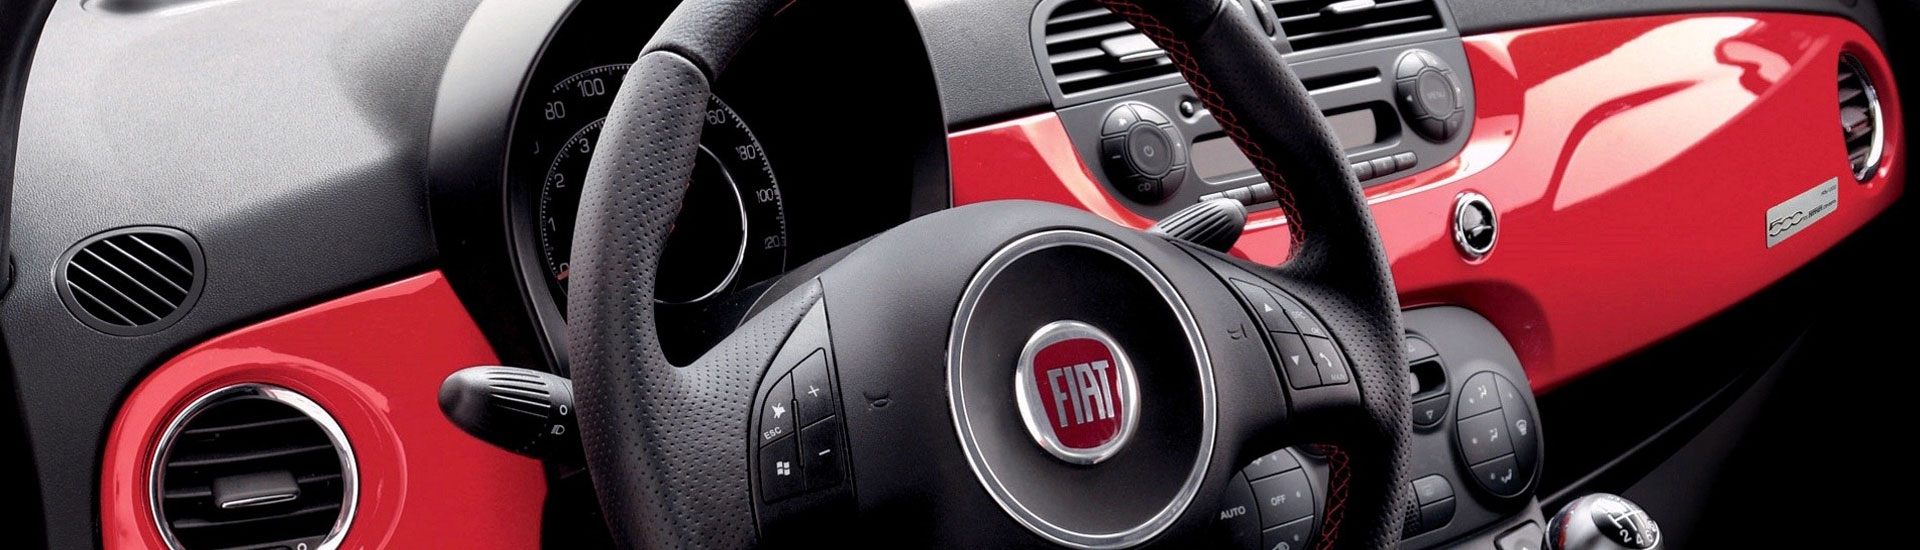 2018 Fiat 500L Custom Dash Kits